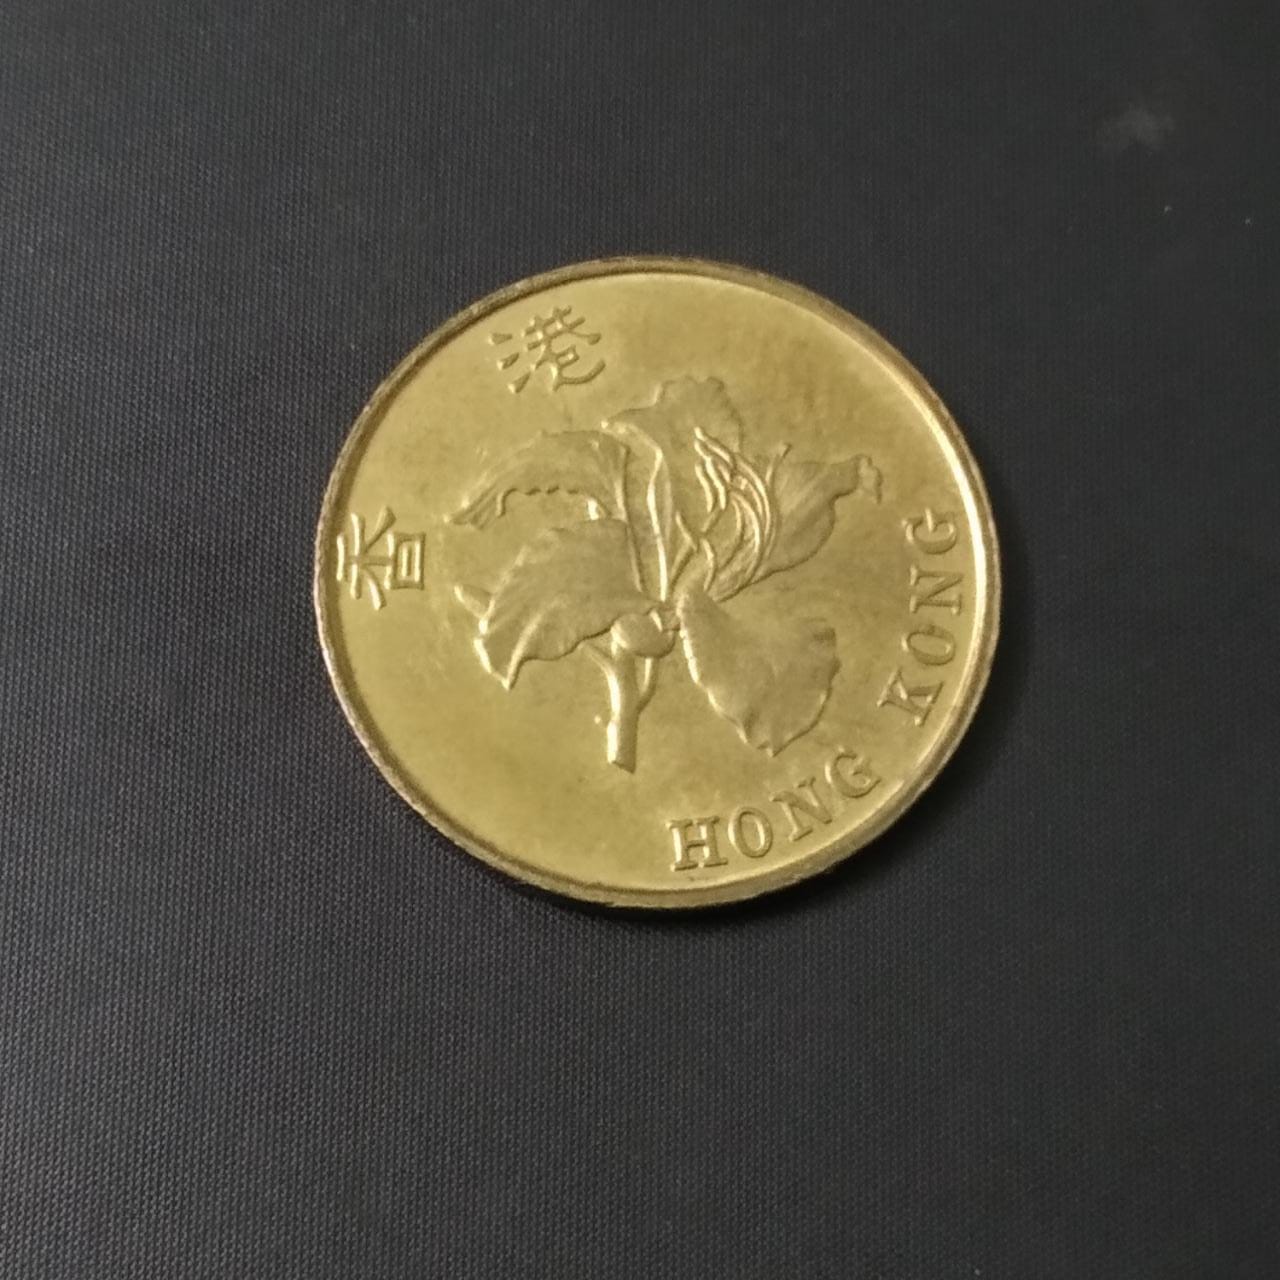 10 cents 1998 UNC - Hongkong